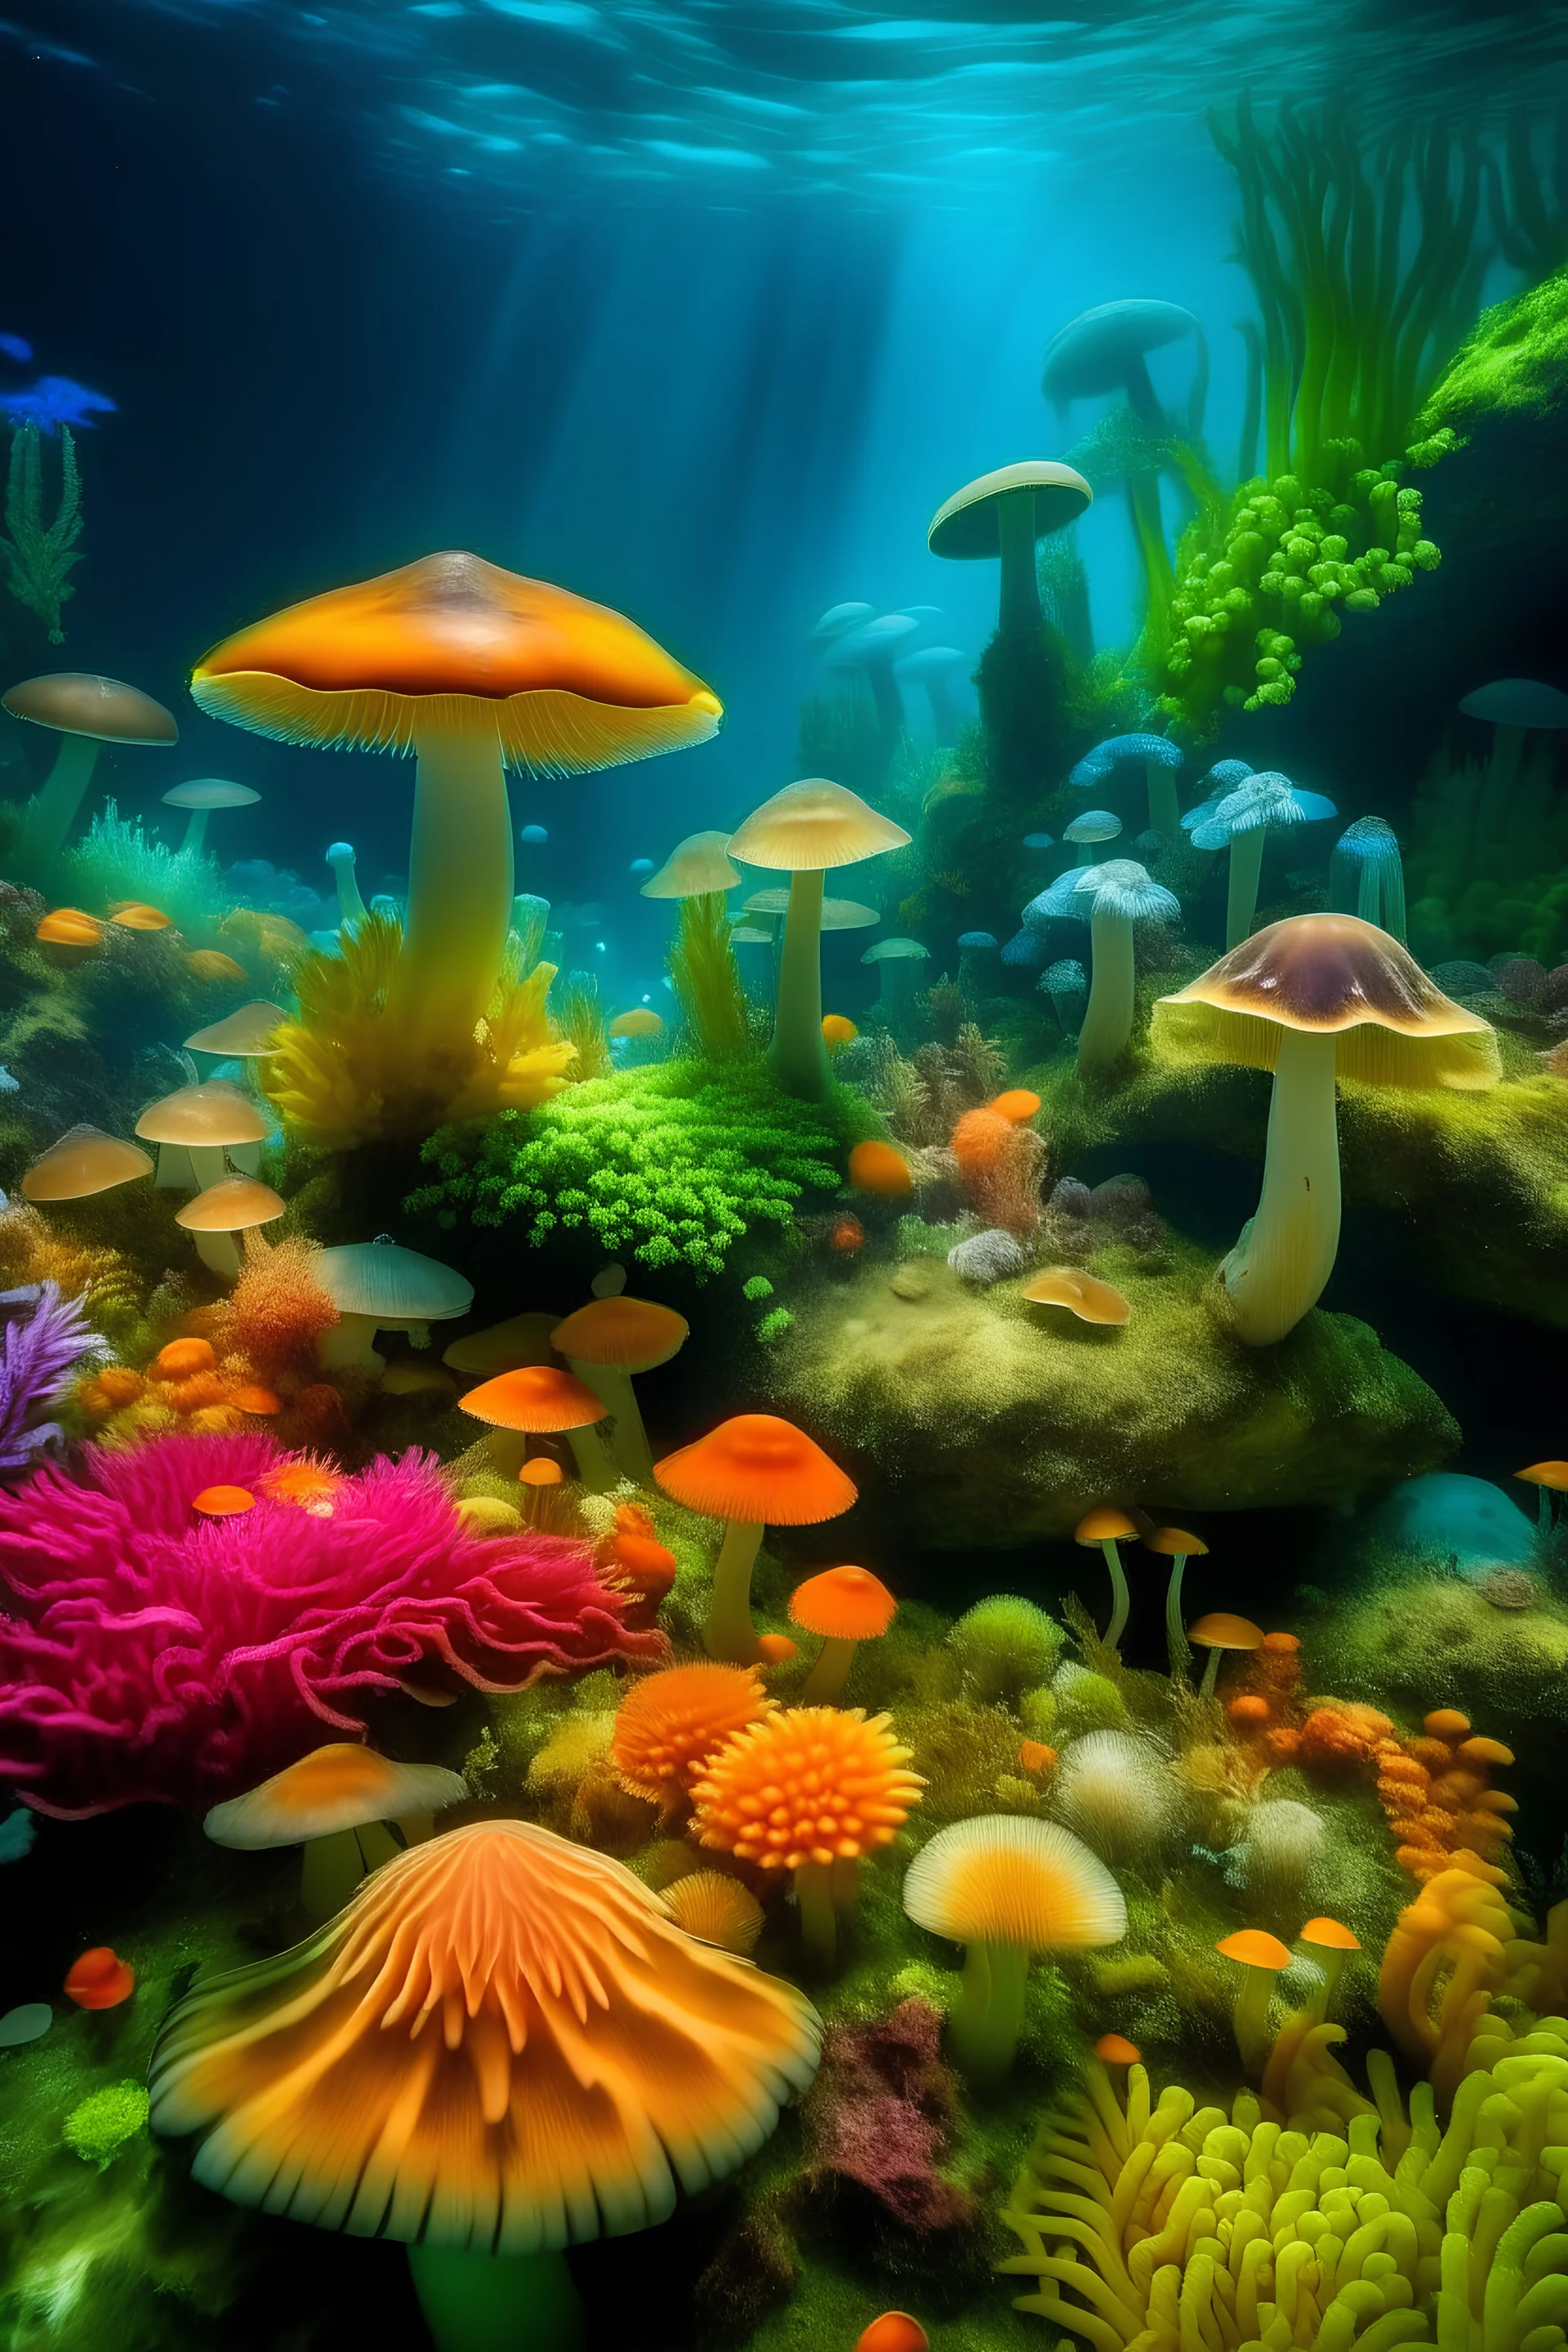 Paisaje subacuatico de hongos de colores y abundante vegetacion, cangrejos y ostras